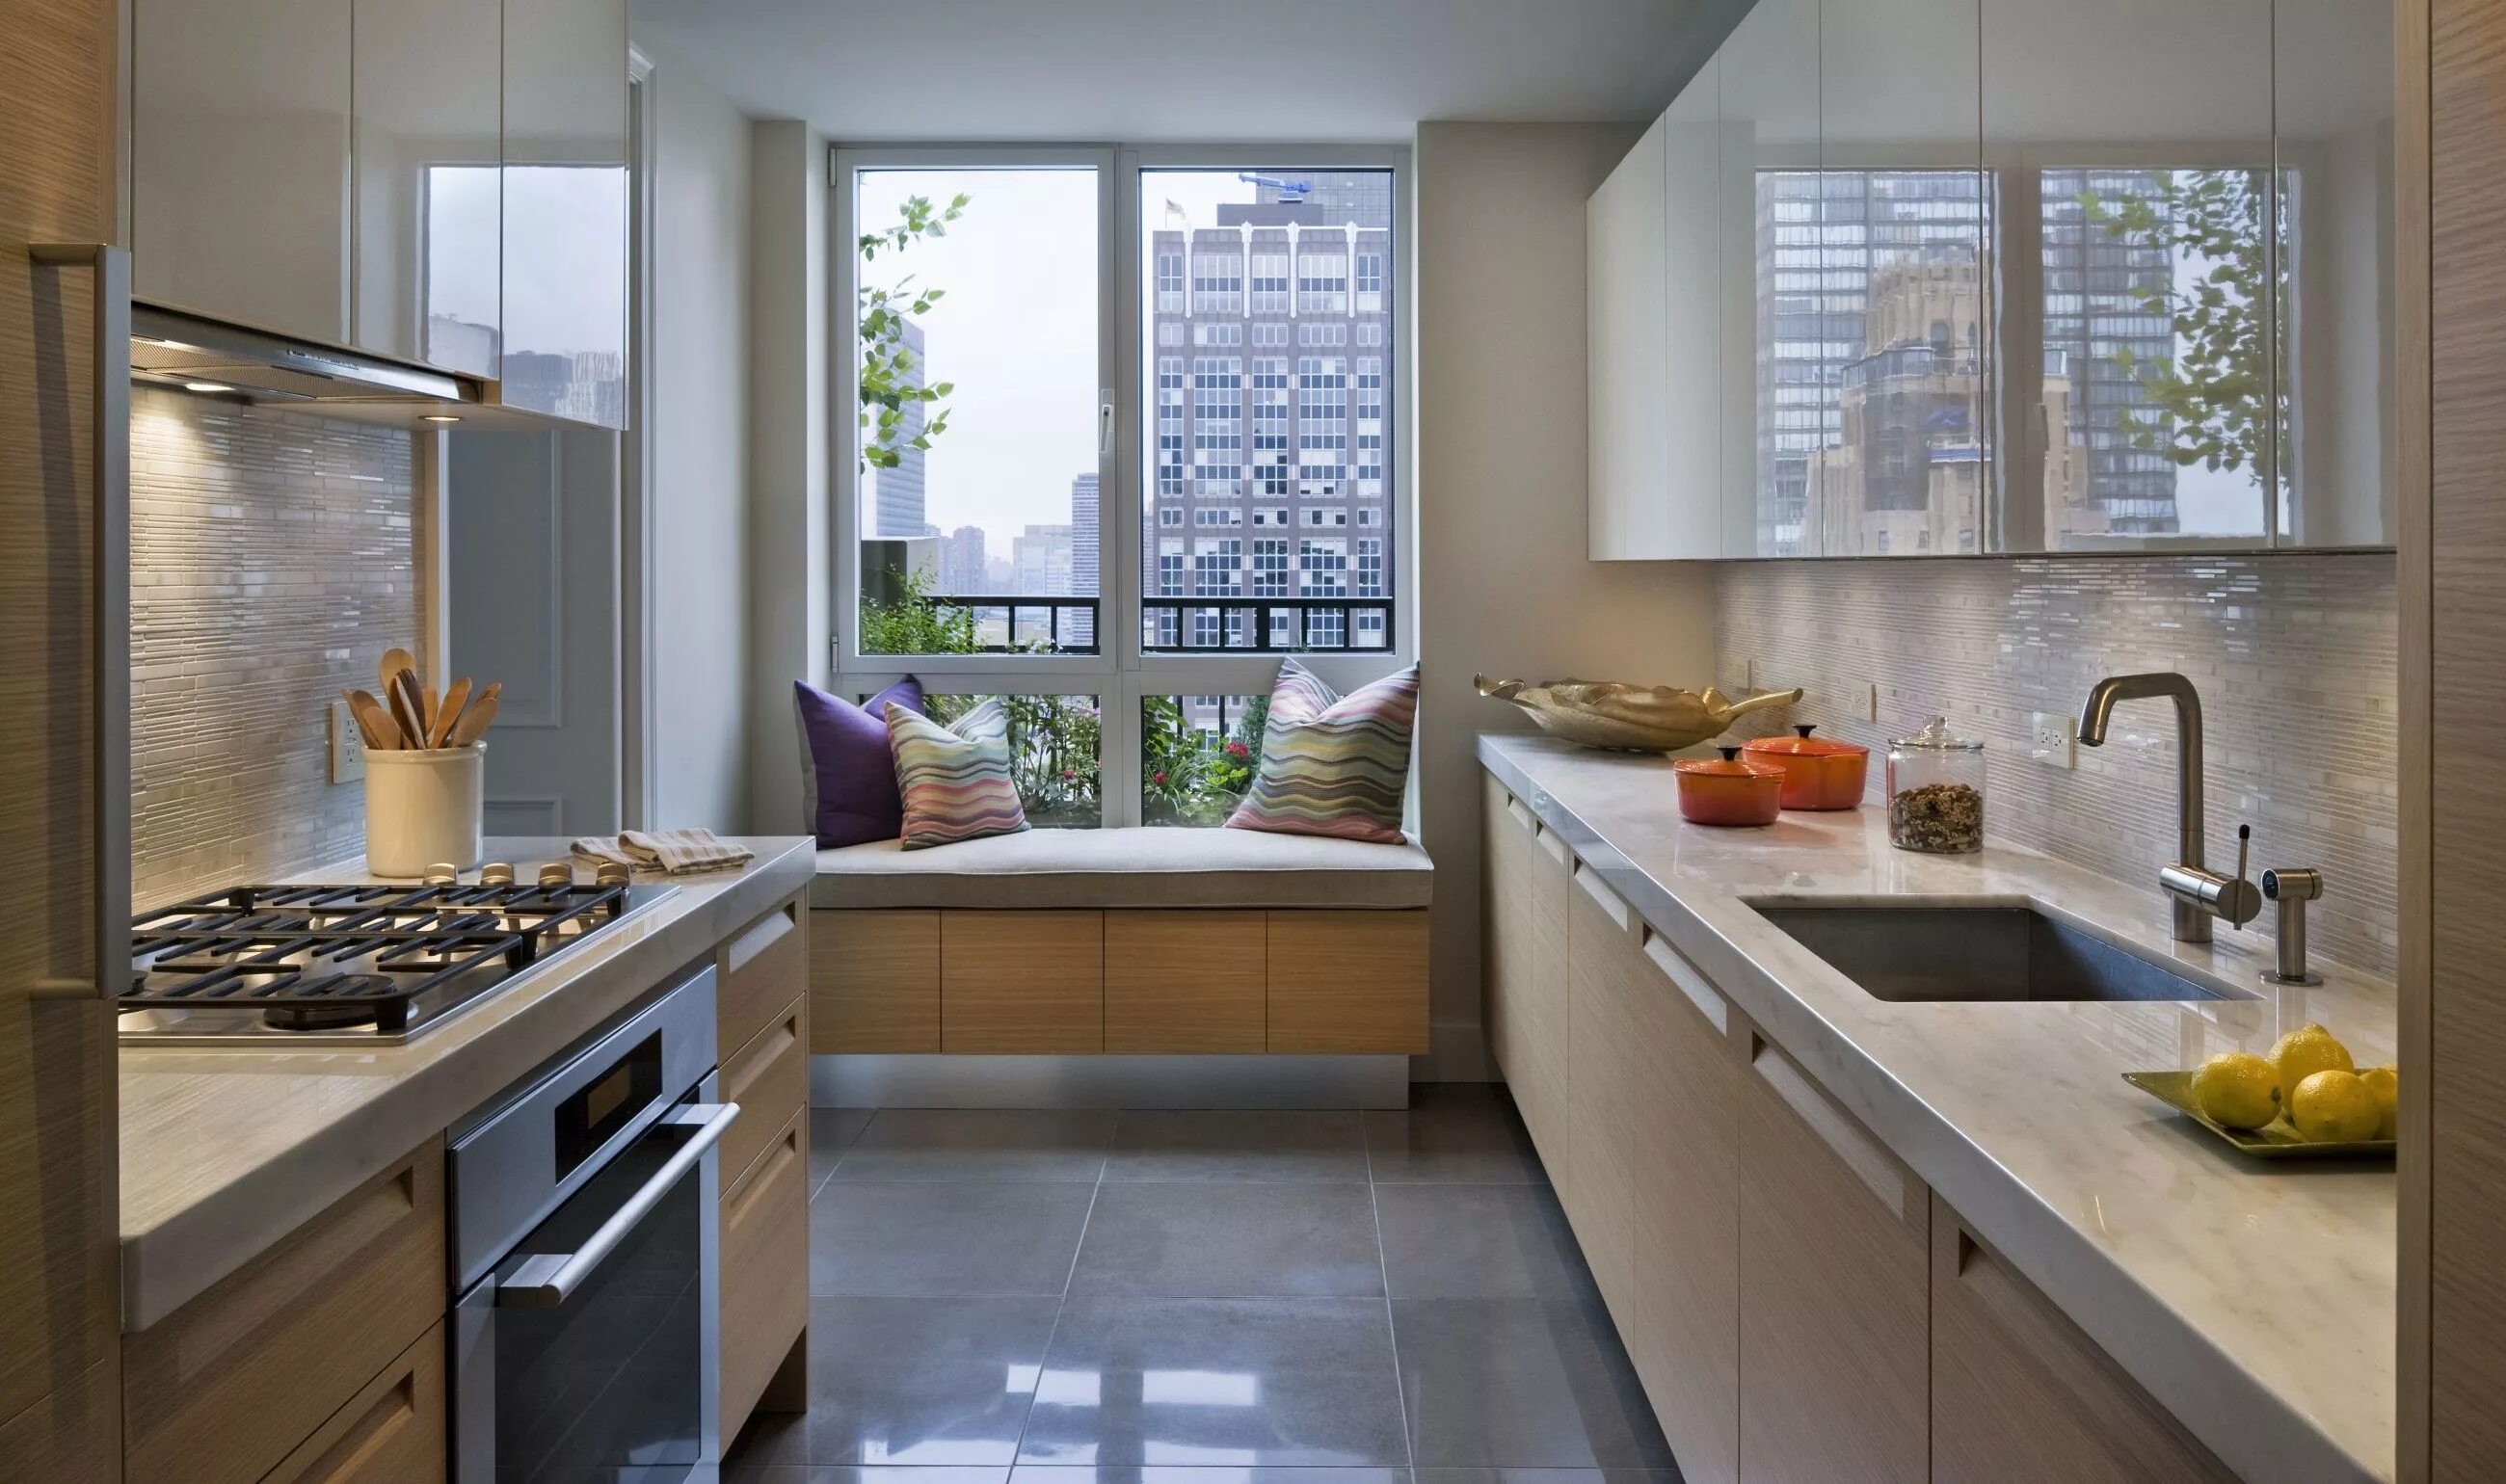 Интерьер кухни с окном. Планировка кухни с большим окном. Кухня с большими окнами. Интерьер прямоугольной кухни.